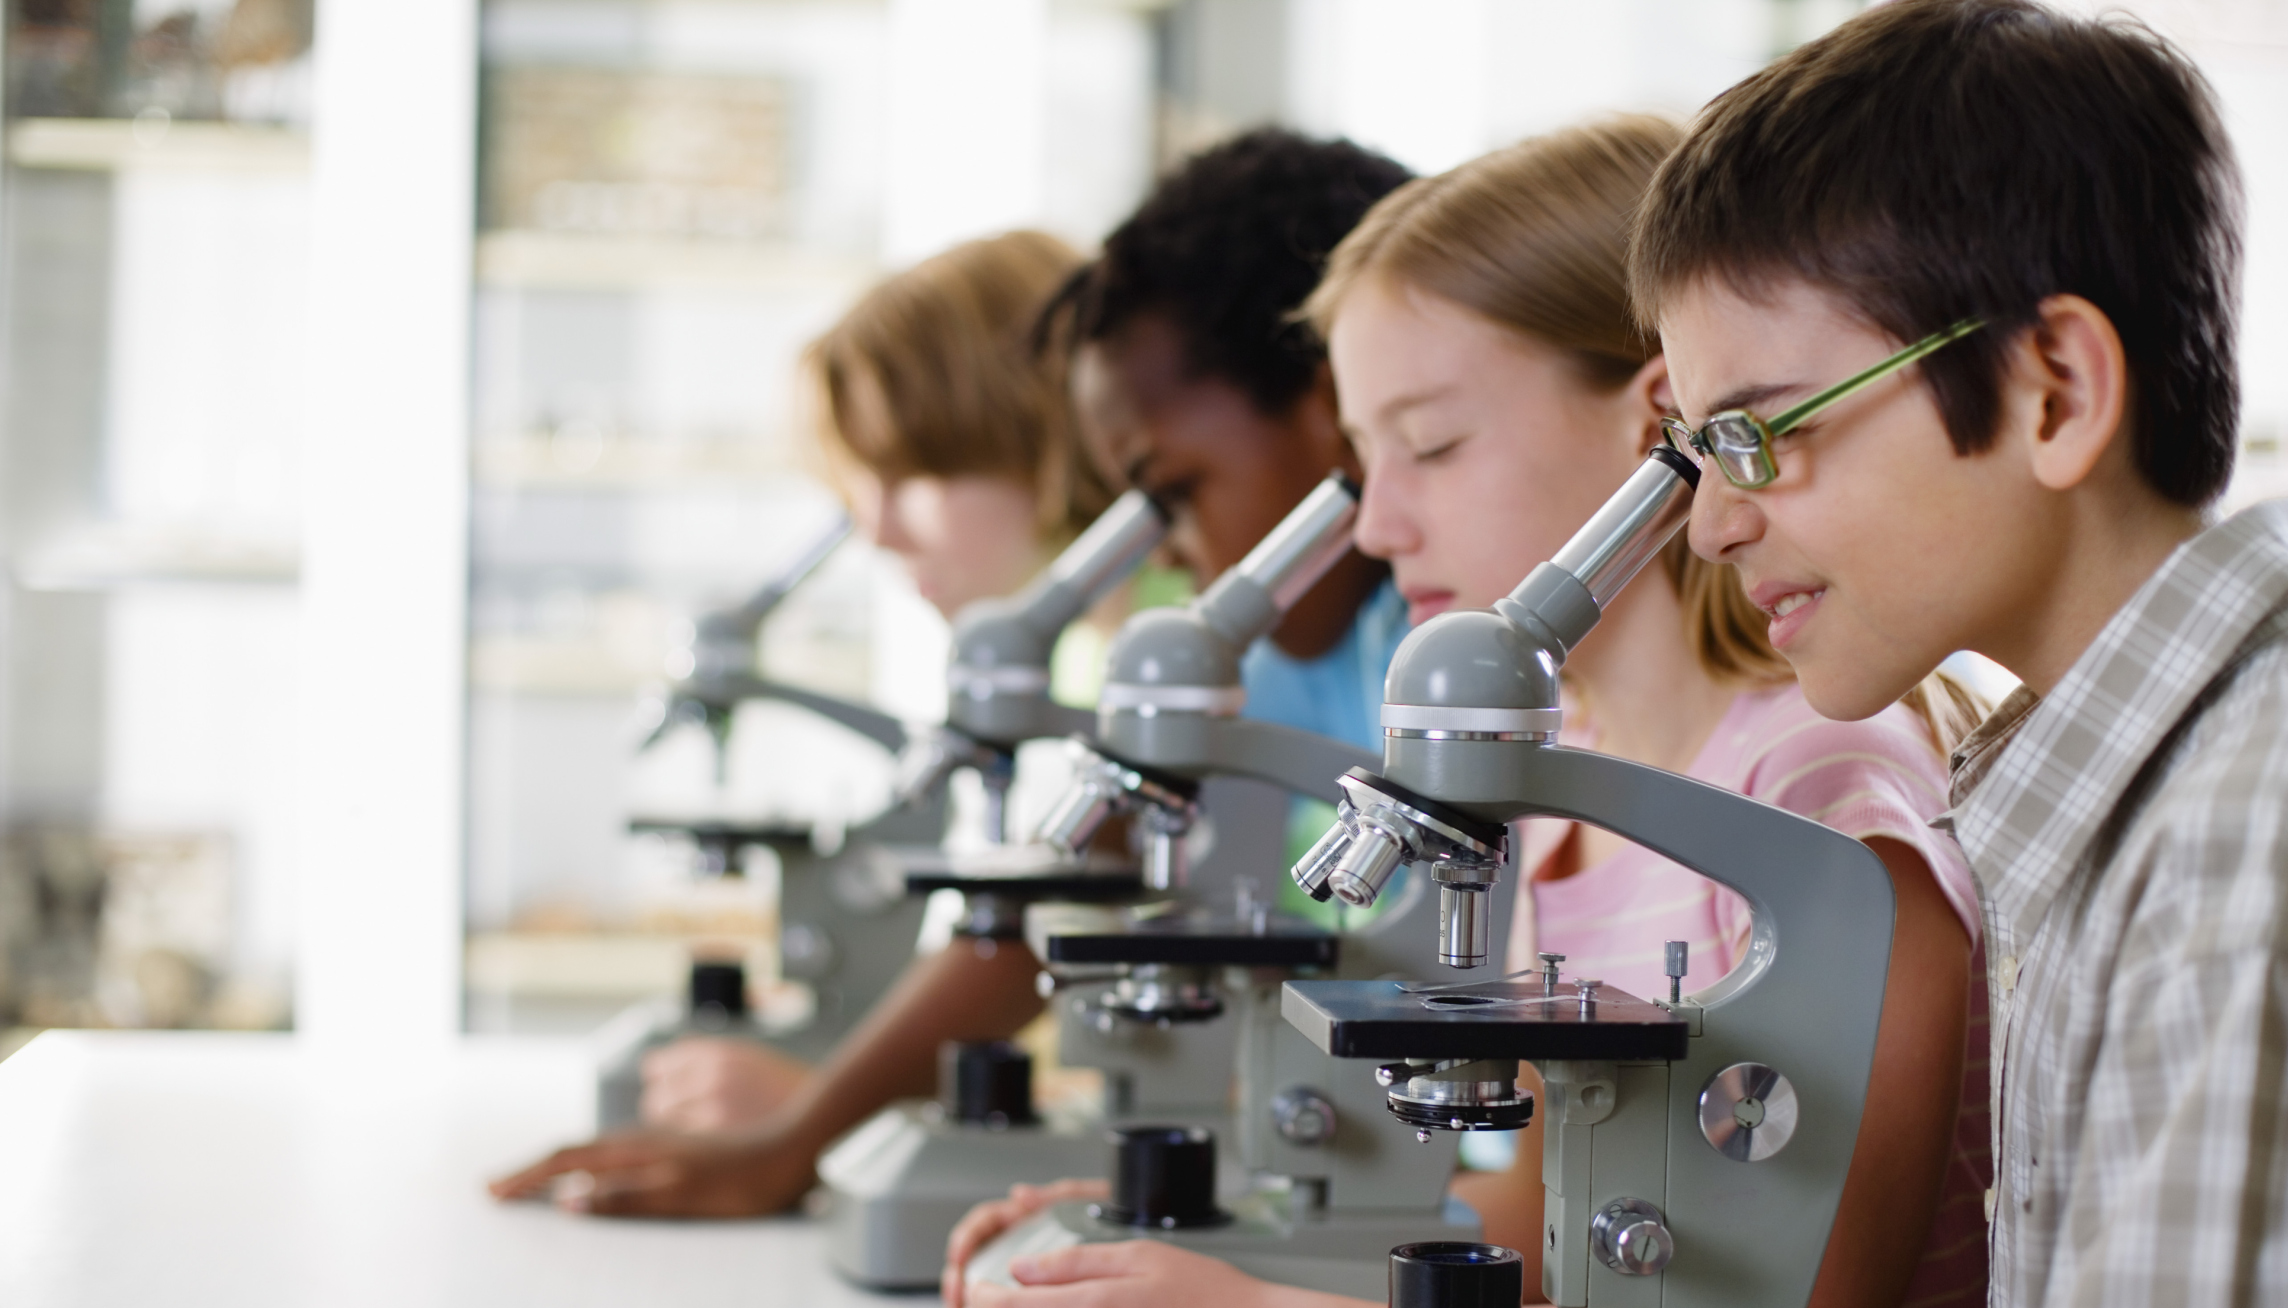 Обучение science. Микроскоп для детей. Урок биологии. Ученики на уроке биологии. Микроскоп для школьника.